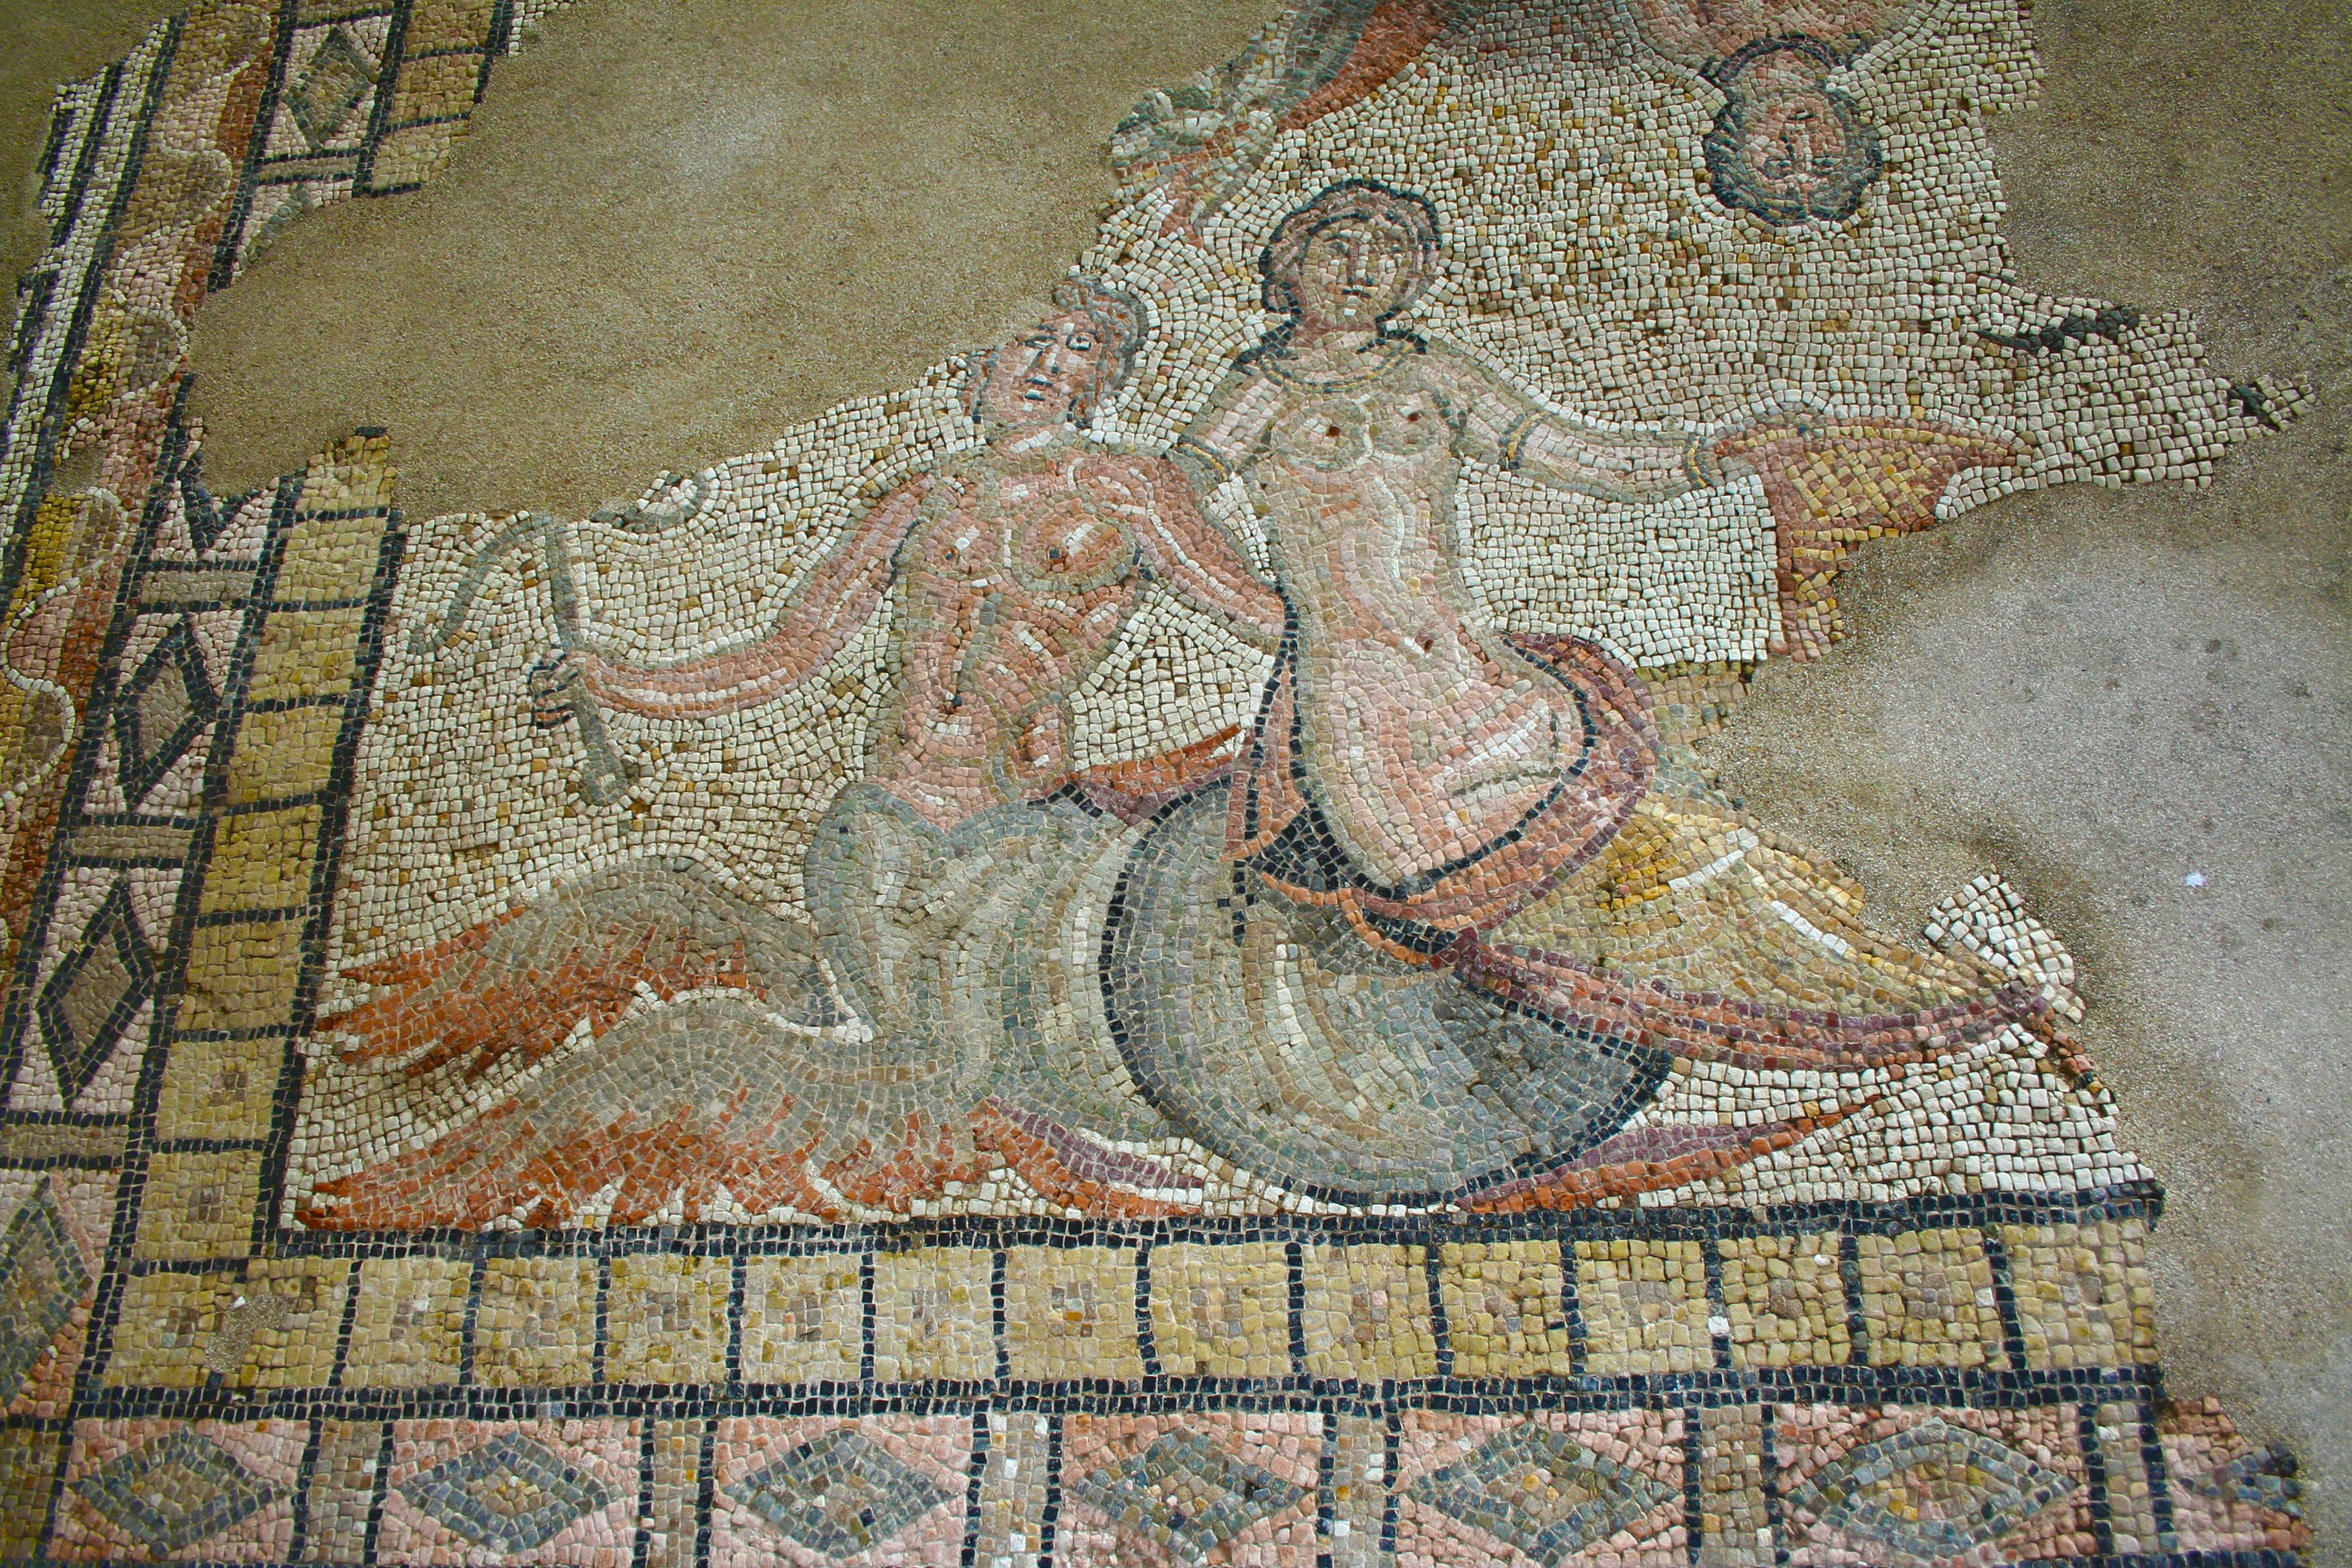 Città Romana di Suasa - Particolare di mosaico